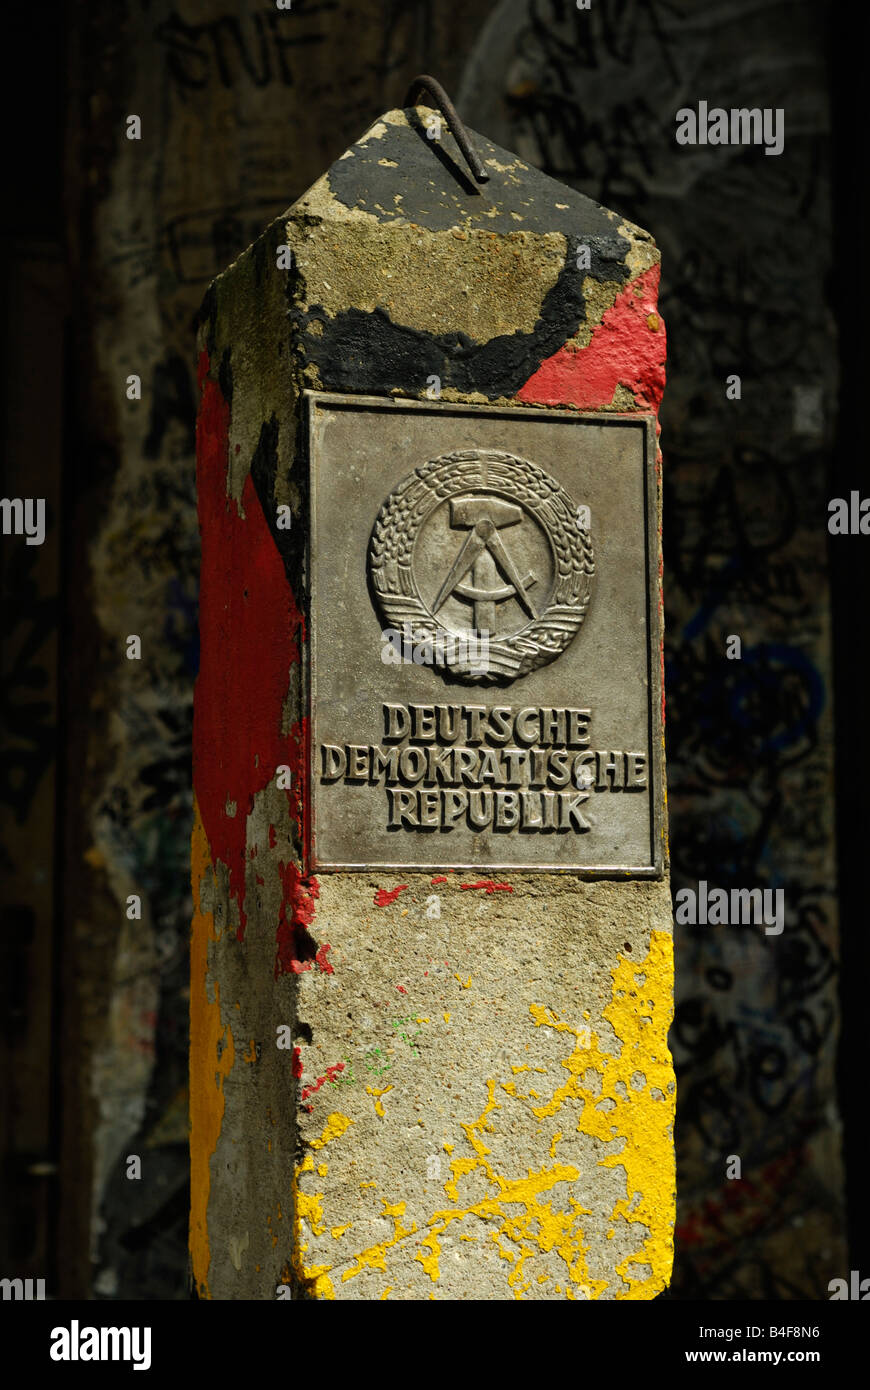 Old Deutsche Demokratische Republik border stone at Checkpoint Charlie Museum, Berlin Stock Photo